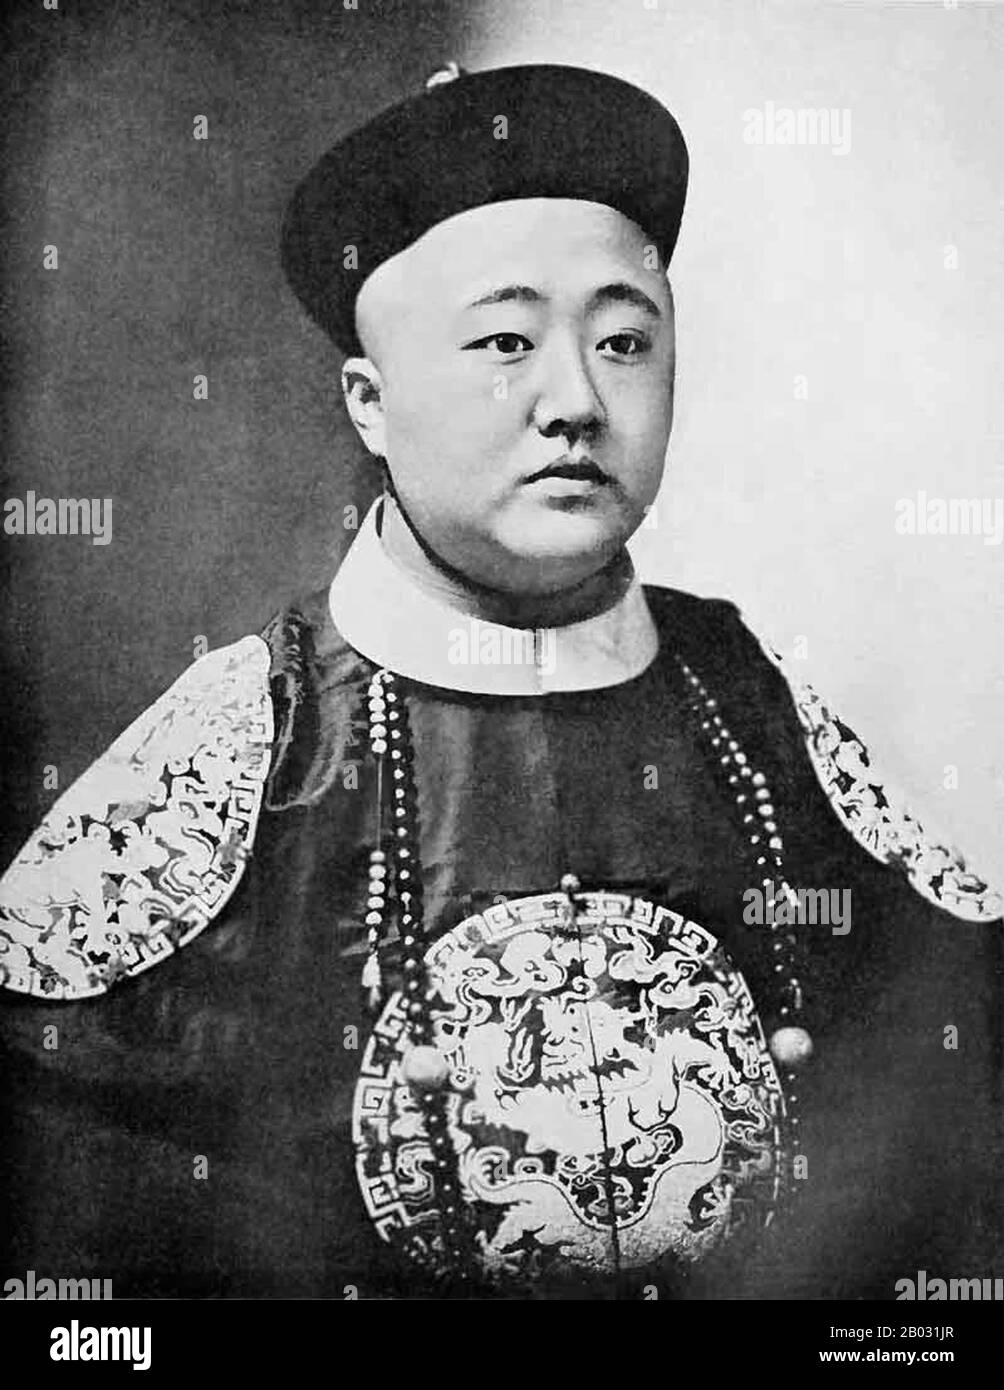 En 1909, Zaixun est nommé ministre de la Marine par intérim au Cabinet impérial dirigé par le prince Qing. Plus tard, il a été envoyé en Europe et aux États-Unis pour étudier les marines des puissances occidentales. Après son retour en Chine, en 1911, il devient ministre de la Marine. Après que la Révolution Xinhai a renversé la dynastie Qing, il a vécu le reste de sa vie en retraite à Beijing et Tianjin. Il est mort à Tianjin en 1949. Banque D'Images